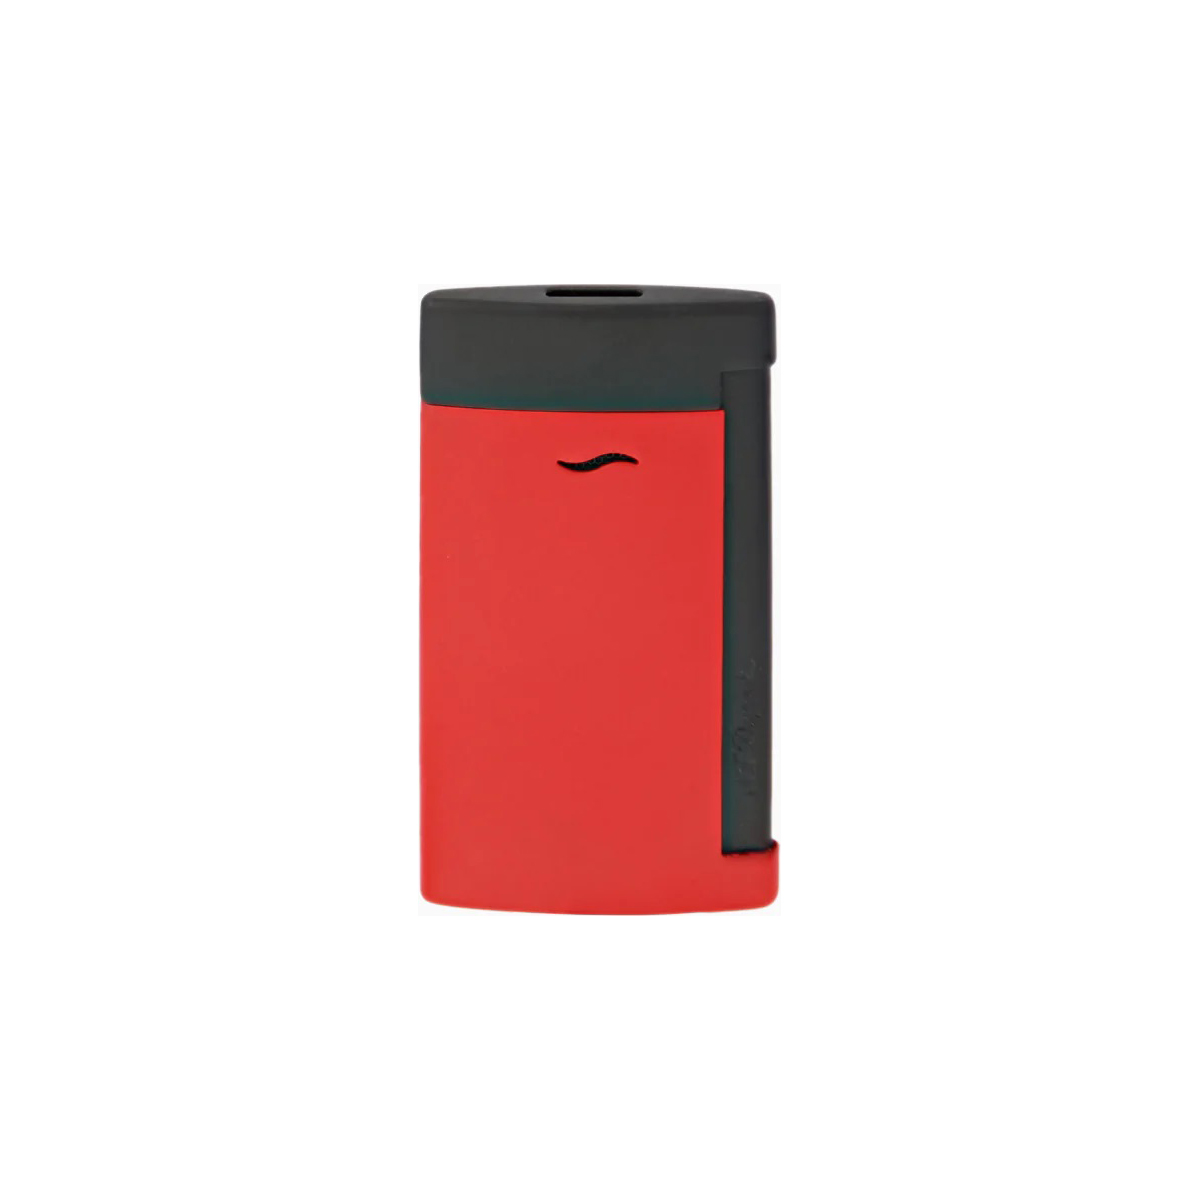 Dupont - 027749 - Slim 7 Lighter - Matt Black and red